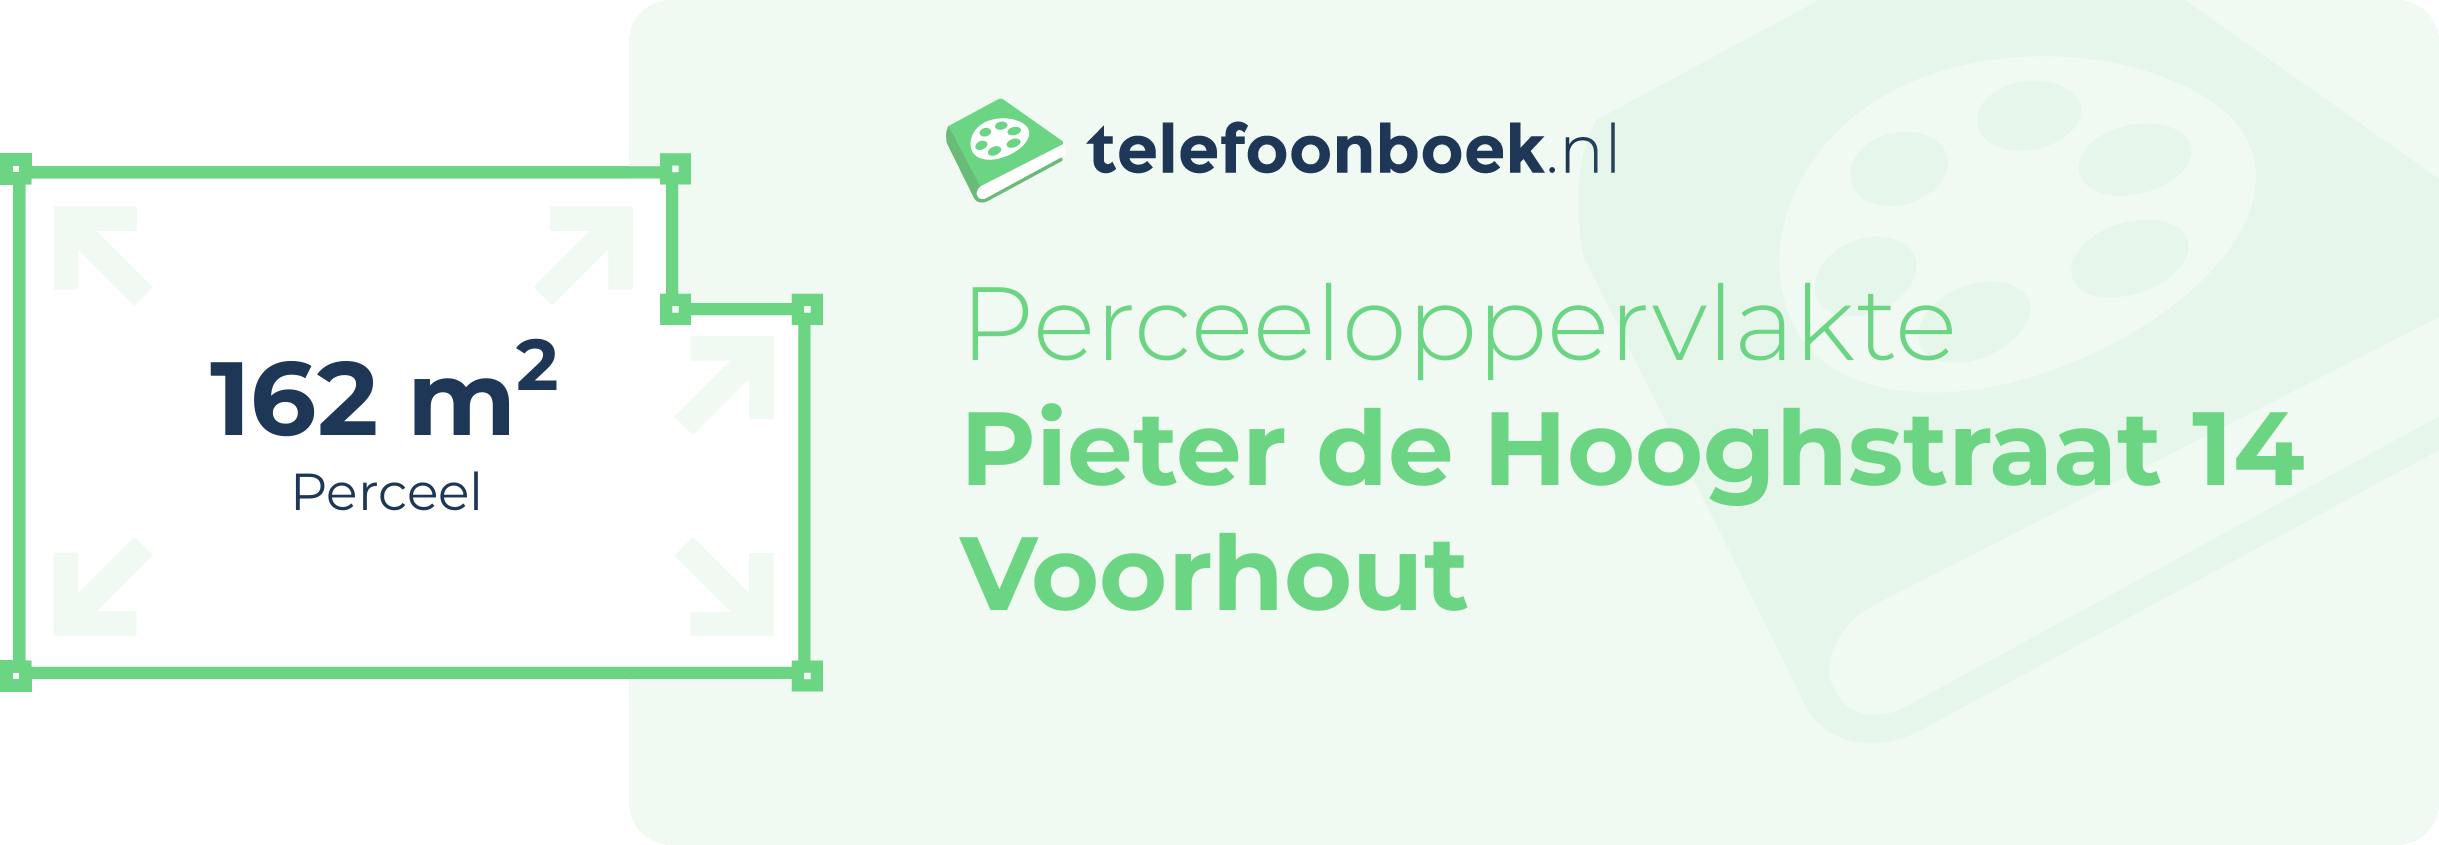 Perceeloppervlakte Pieter De Hooghstraat 14 Voorhout